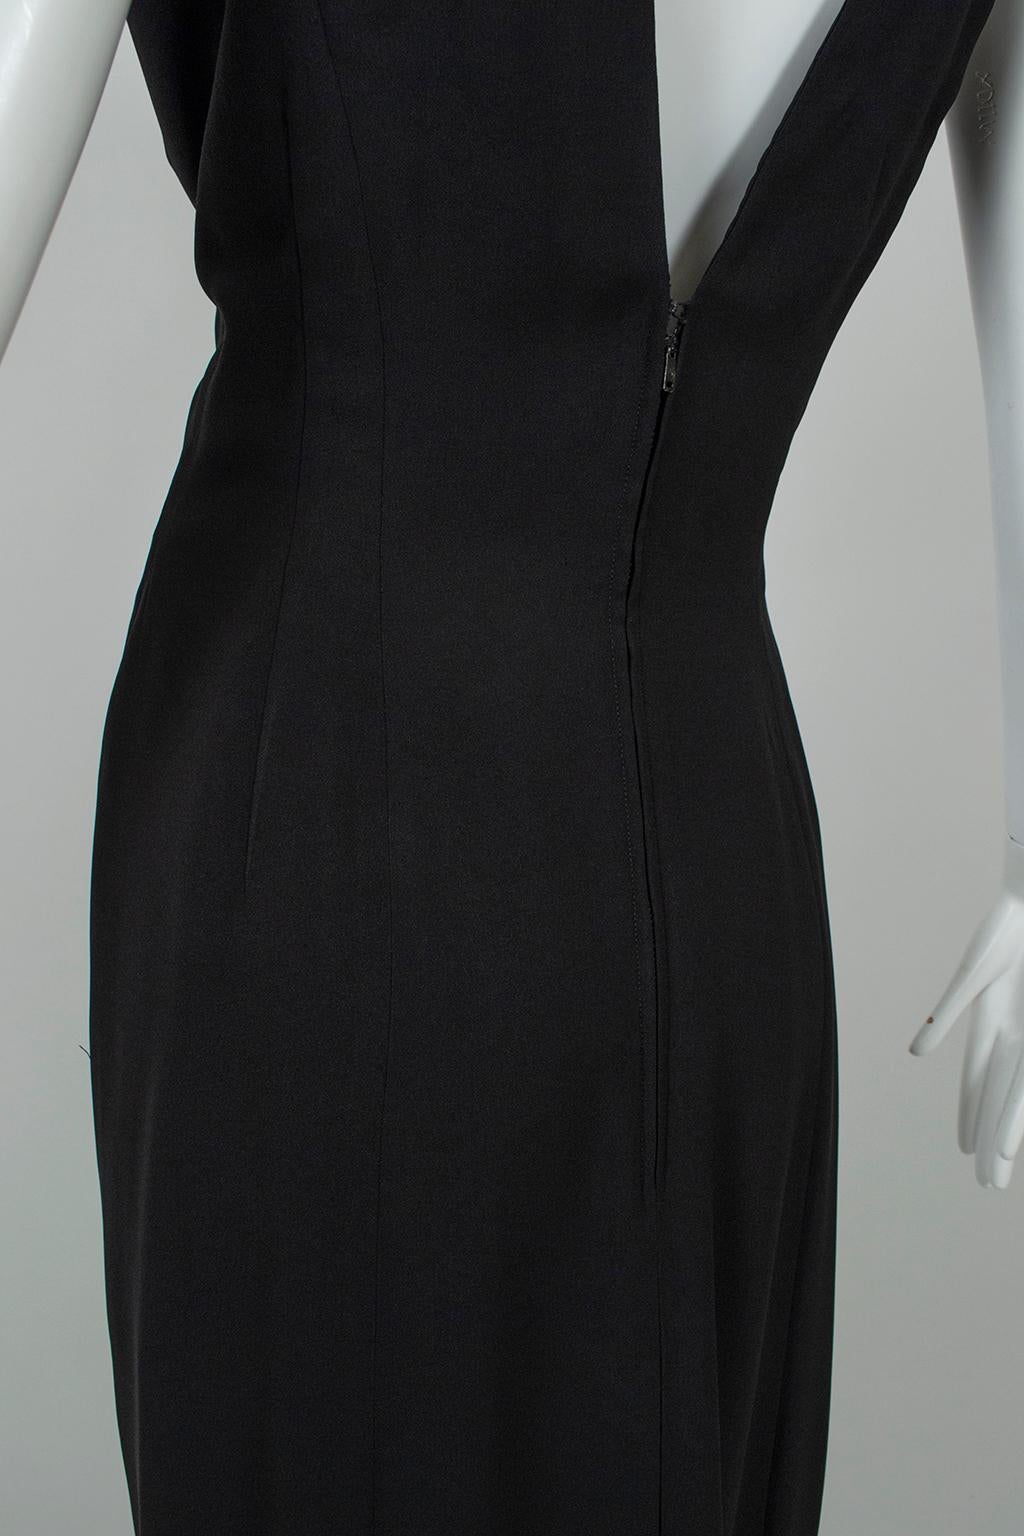 Luis Estévez Black *Larger Size* Knotted Shoulder Plunge-Front Dress - M-L, 1957 For Sale 4